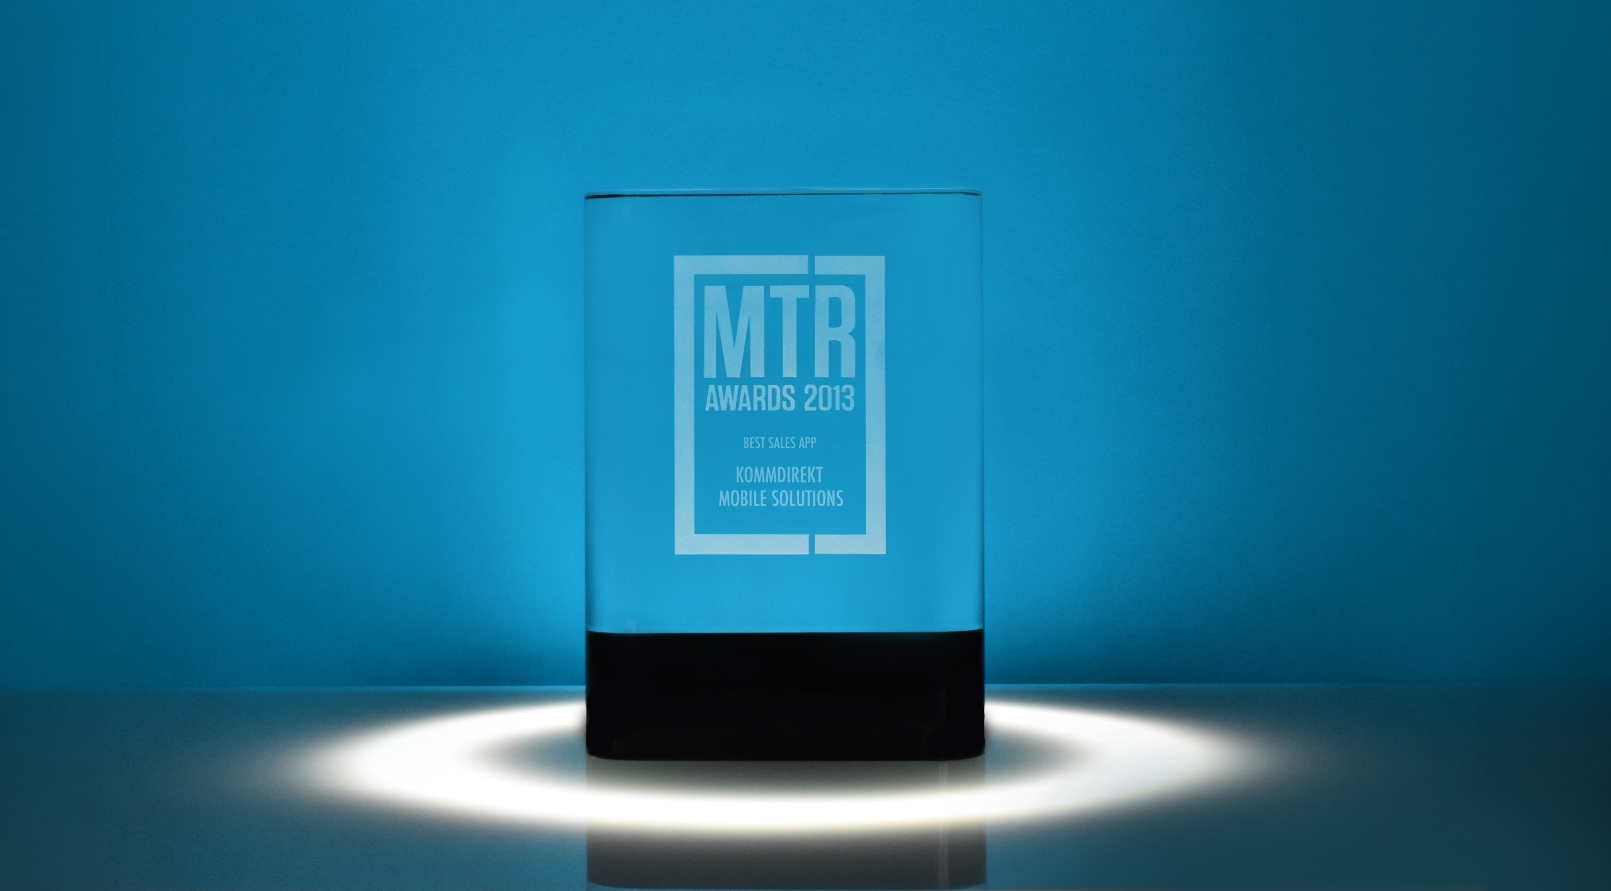 Kommdirekt Bildbeschreibung: mtr-Award